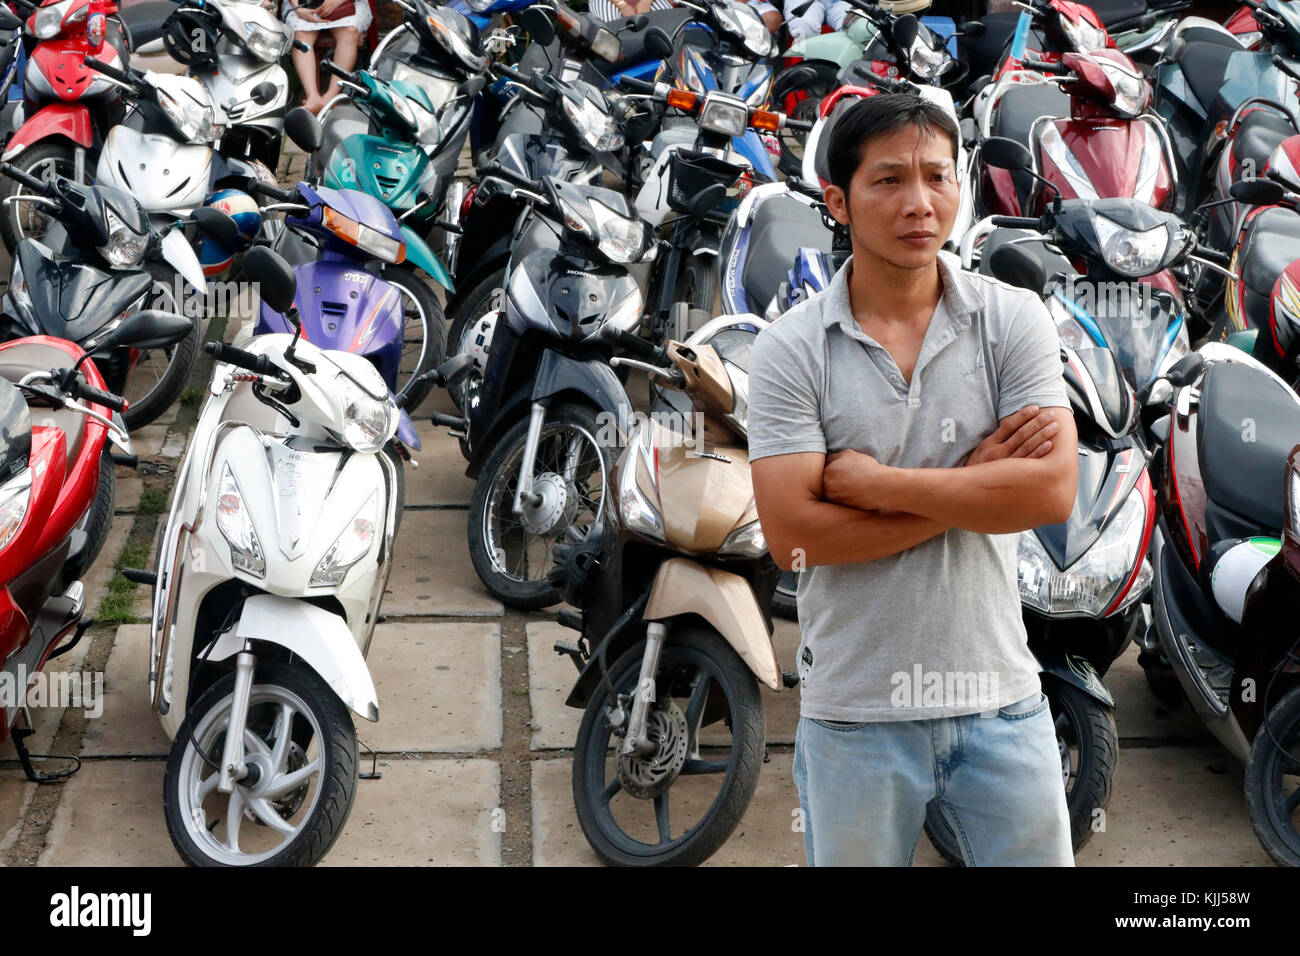 Les scooters et motos dans un parking. Ho Chi Minh Ville. Le Vietnam. Banque D'Images